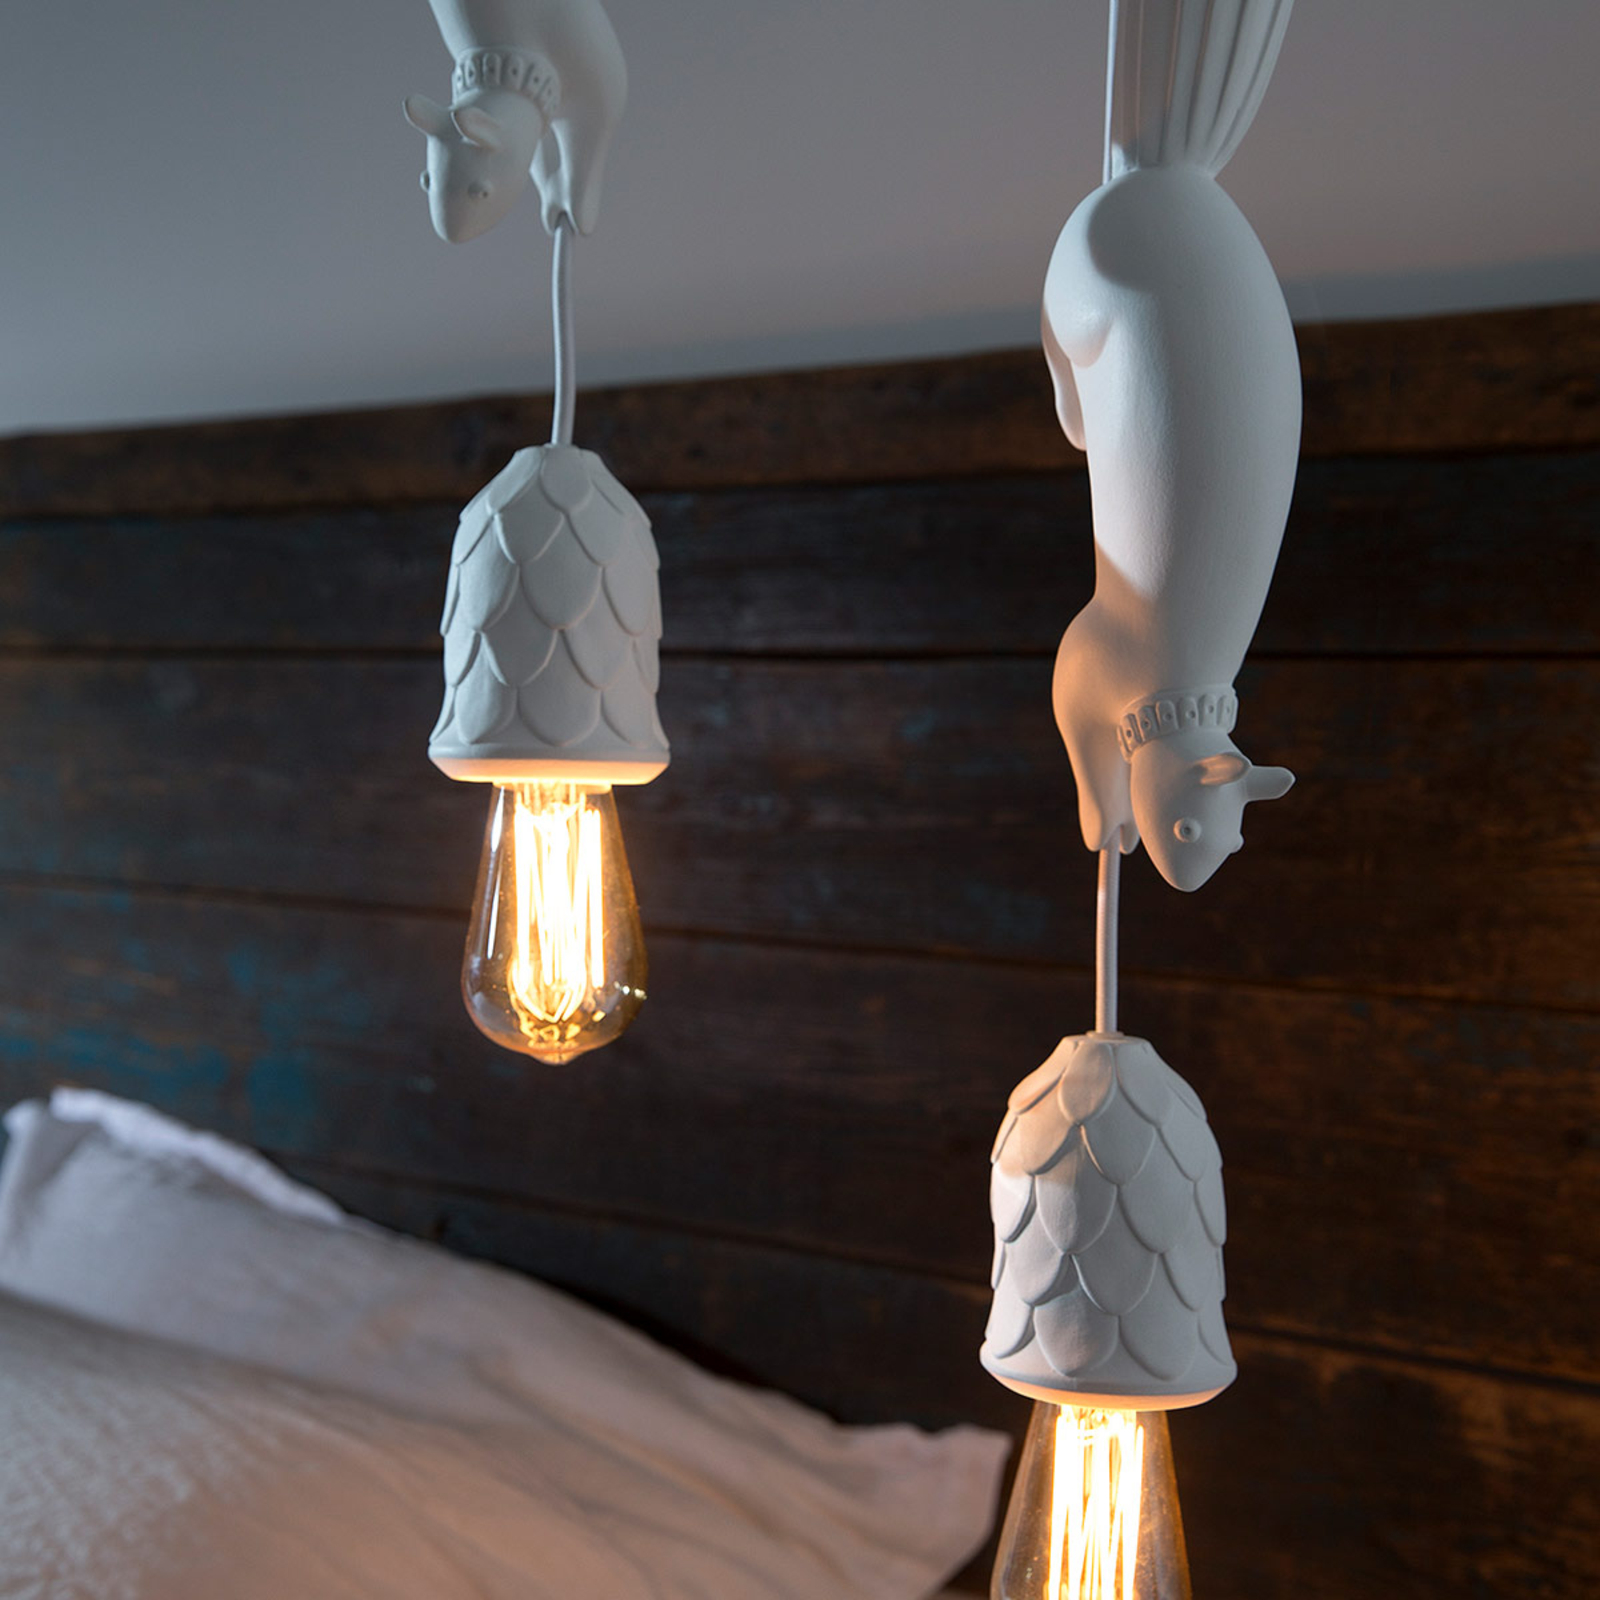 Karman Sherwood e Robin - design-hanglamp